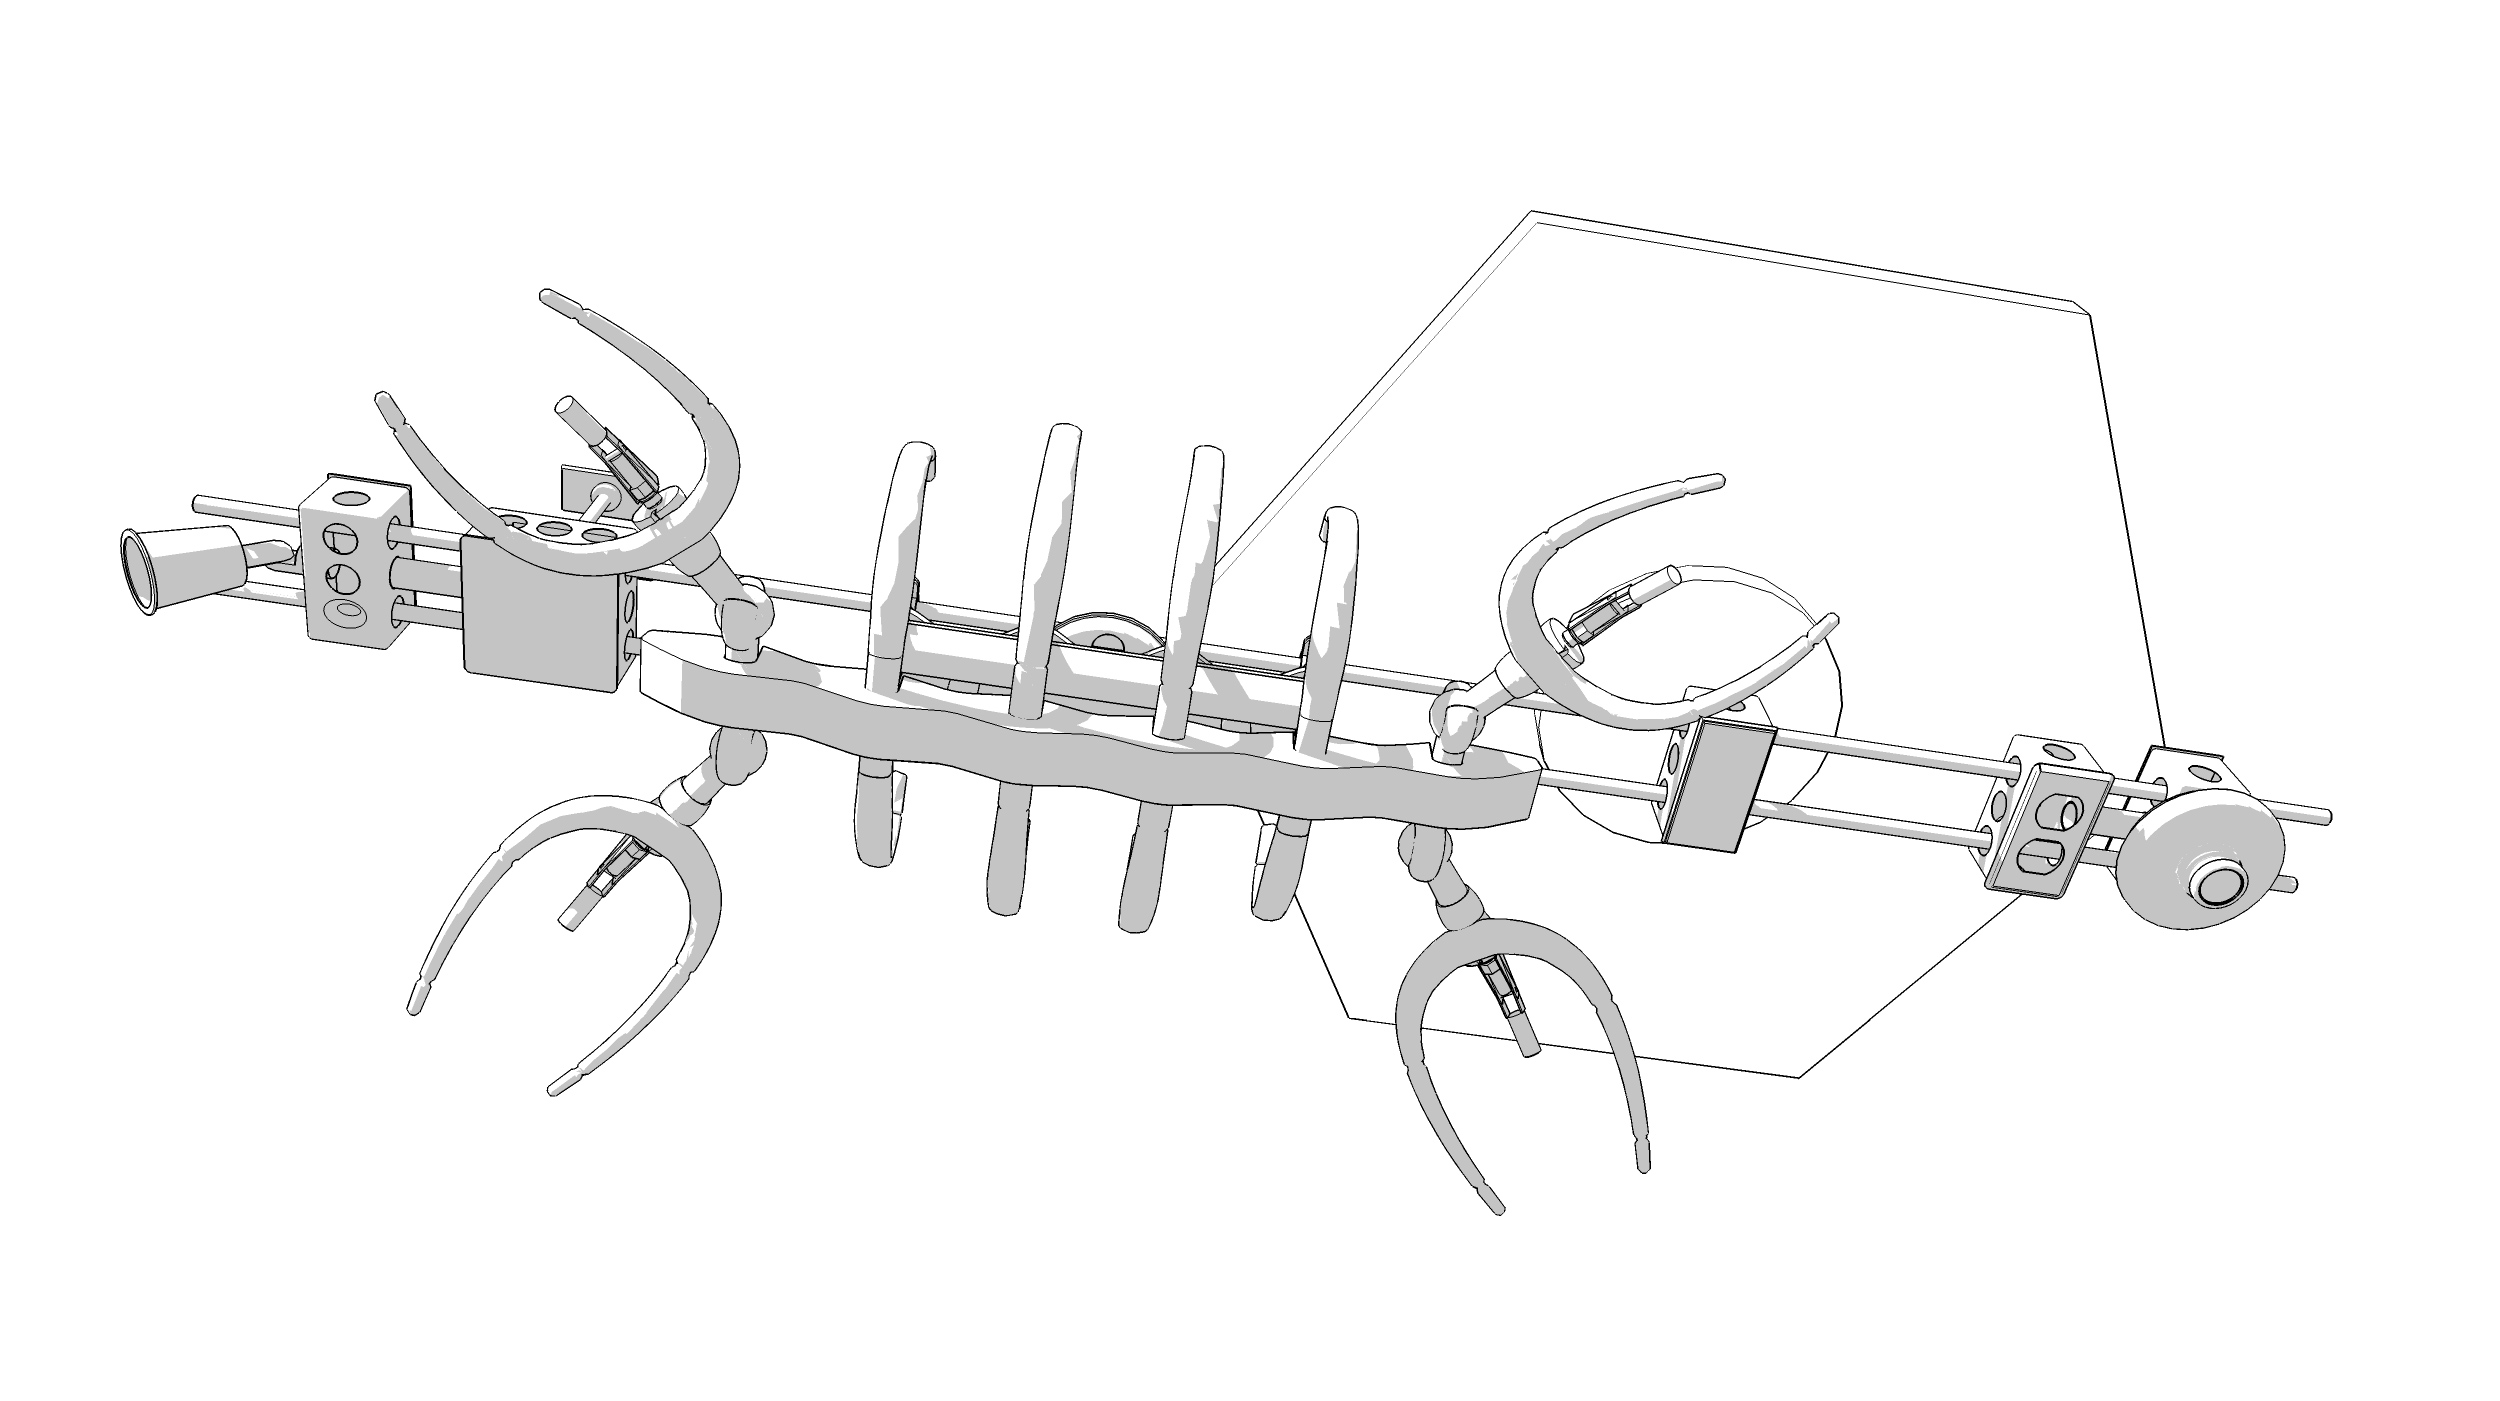 Plesiosaur, v7 concept (2011)